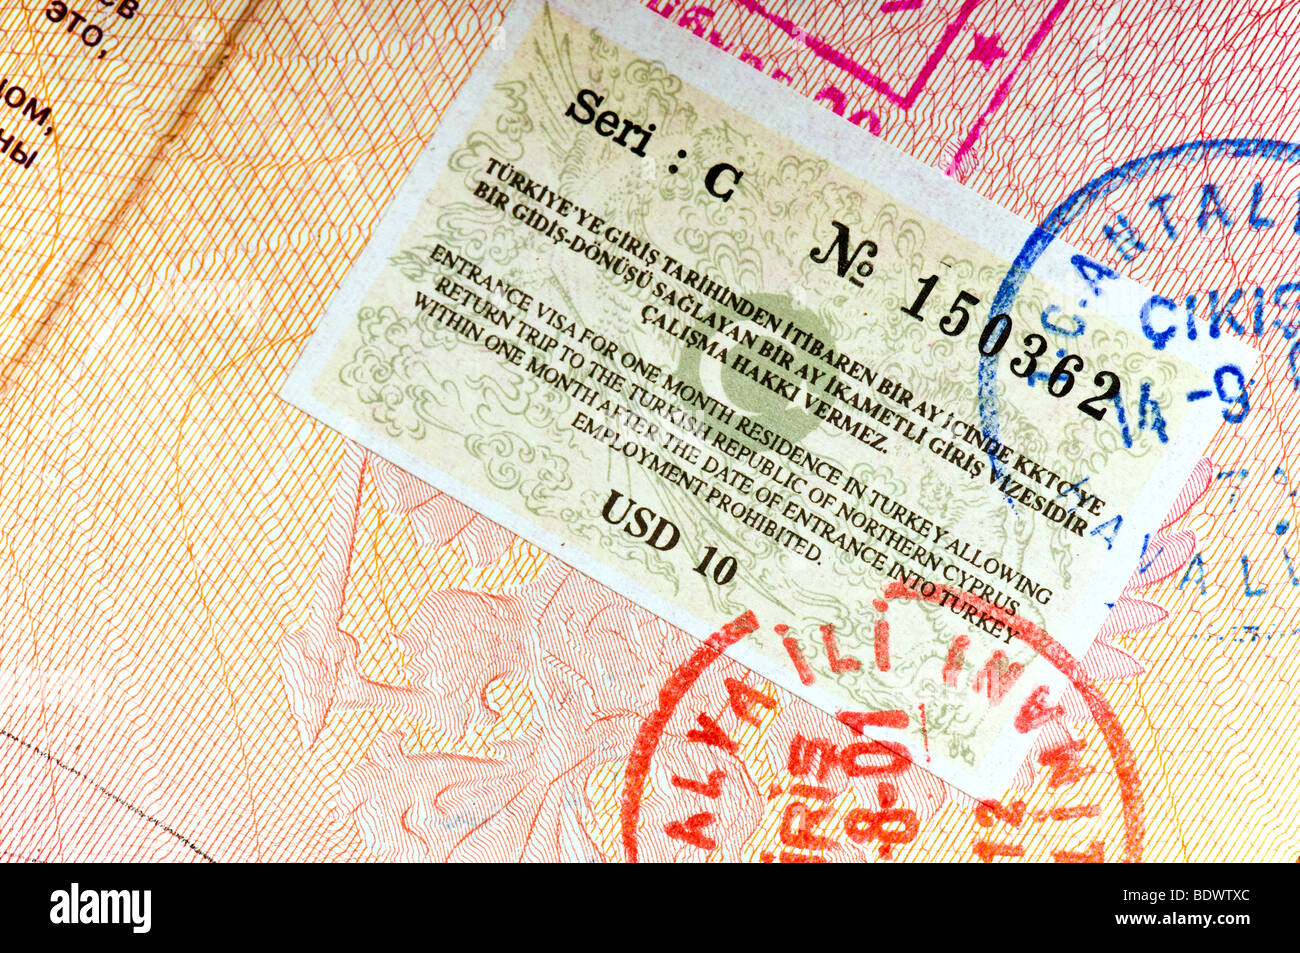 Visa passeport international en Turquie Photo Stock - Alamy